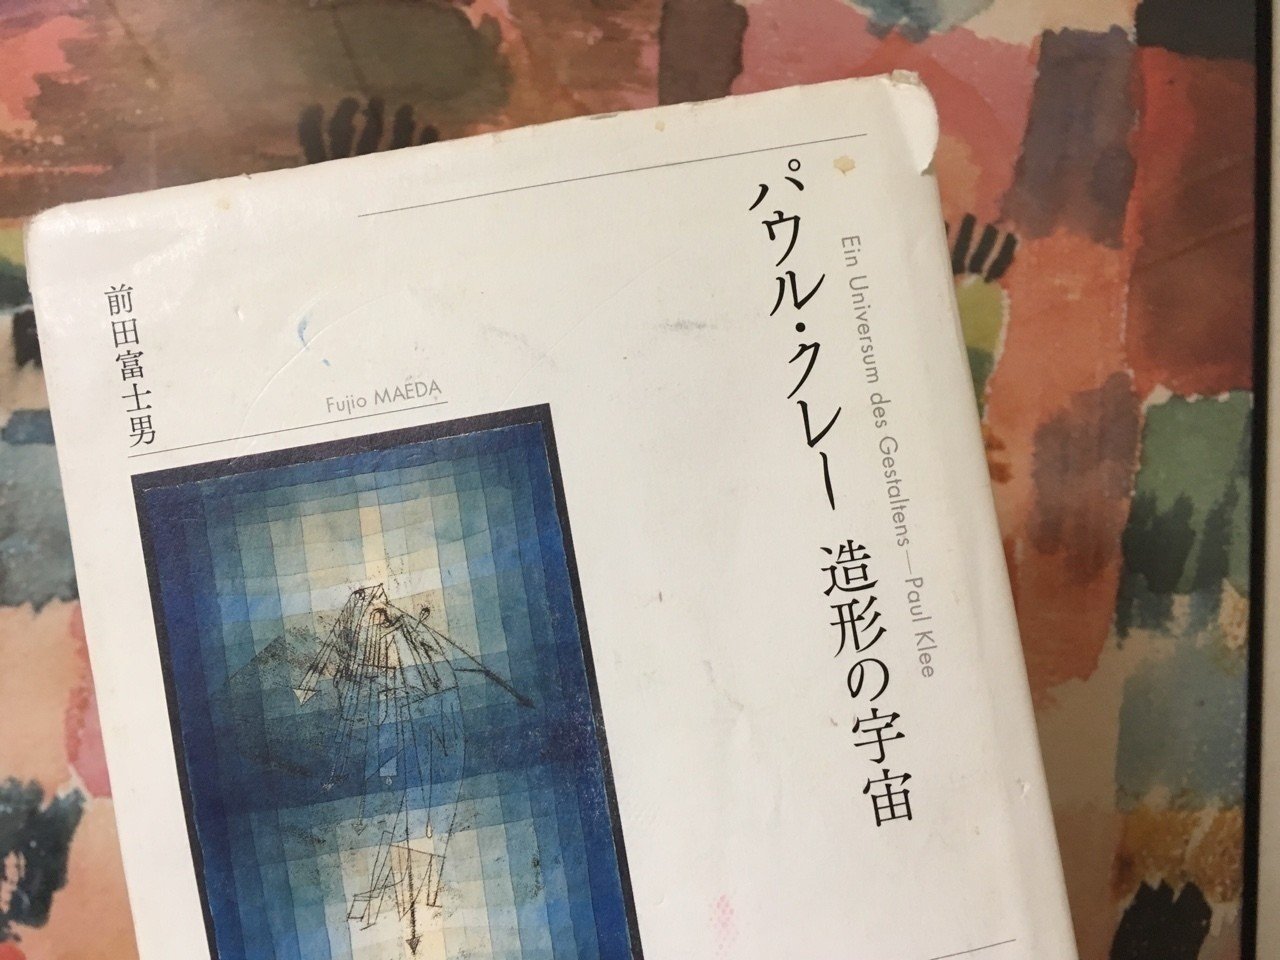 絶版 希少本 パウル・クレー 造形の宇宙 / 前田富士男 / Paul Klee 